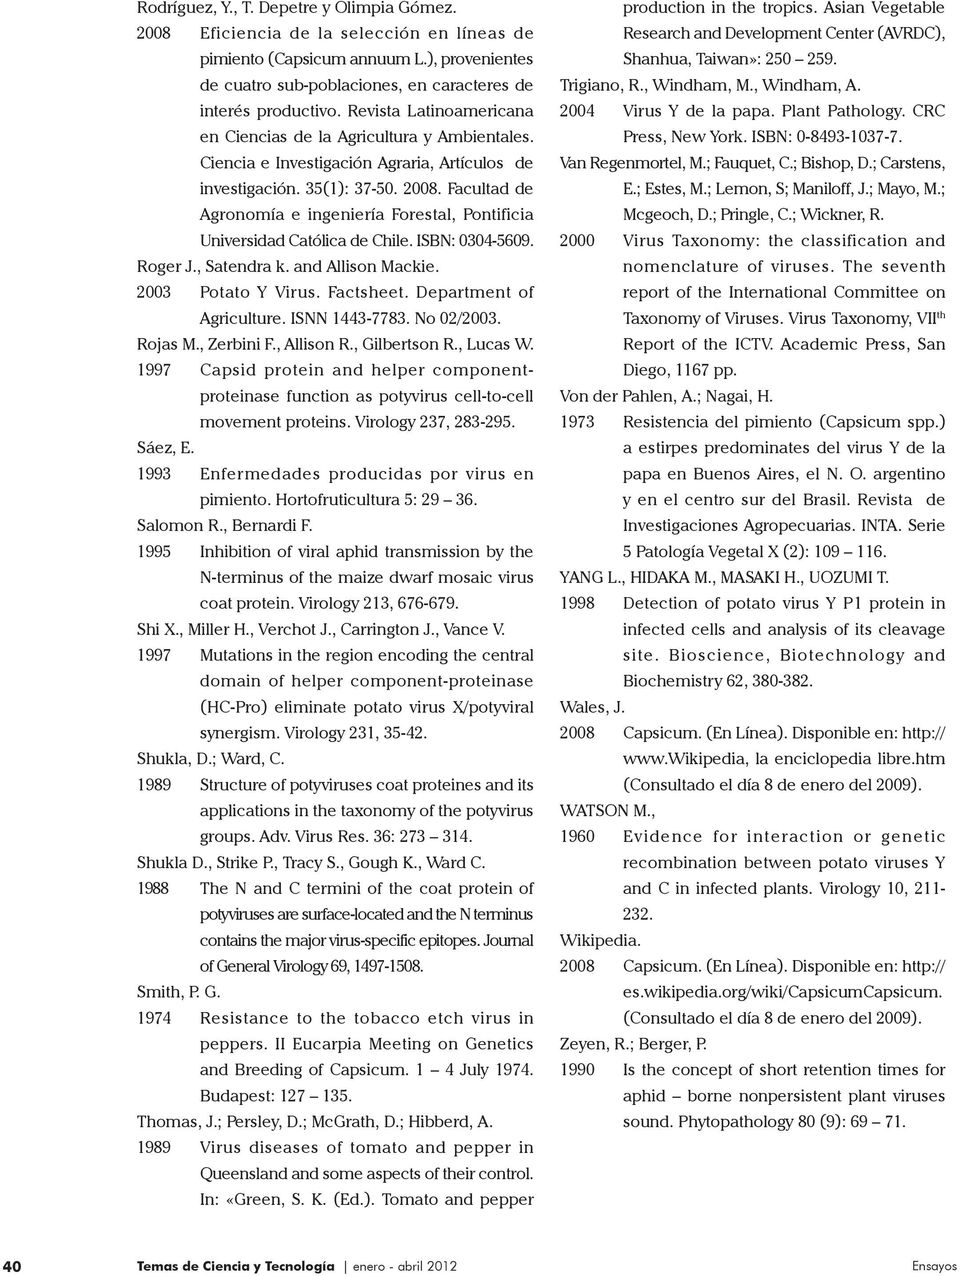 Facultad de Agronomía e ingeniería Forestal, Pontificia Universidad Católica de Chile. ISBN: 0304-5609. Roger J., Satendra k. and Allison Mackie. 2003 Potato Y Virus. Factsheet.